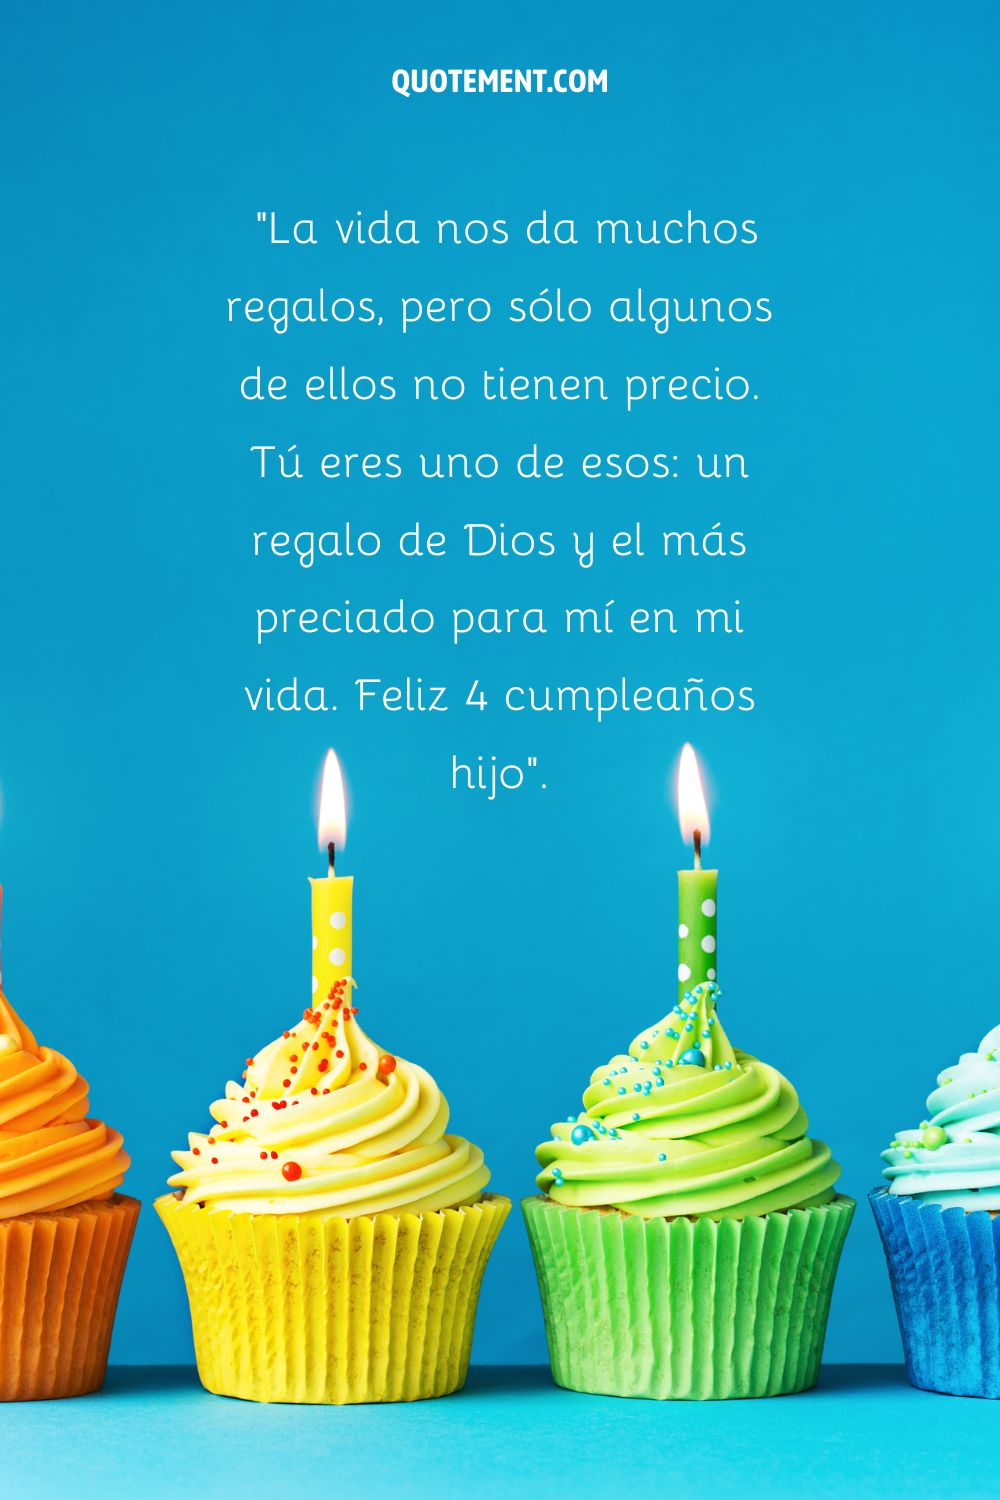 cupcakes de colores que representan el feliz 4º cumpleaños de tu hijo